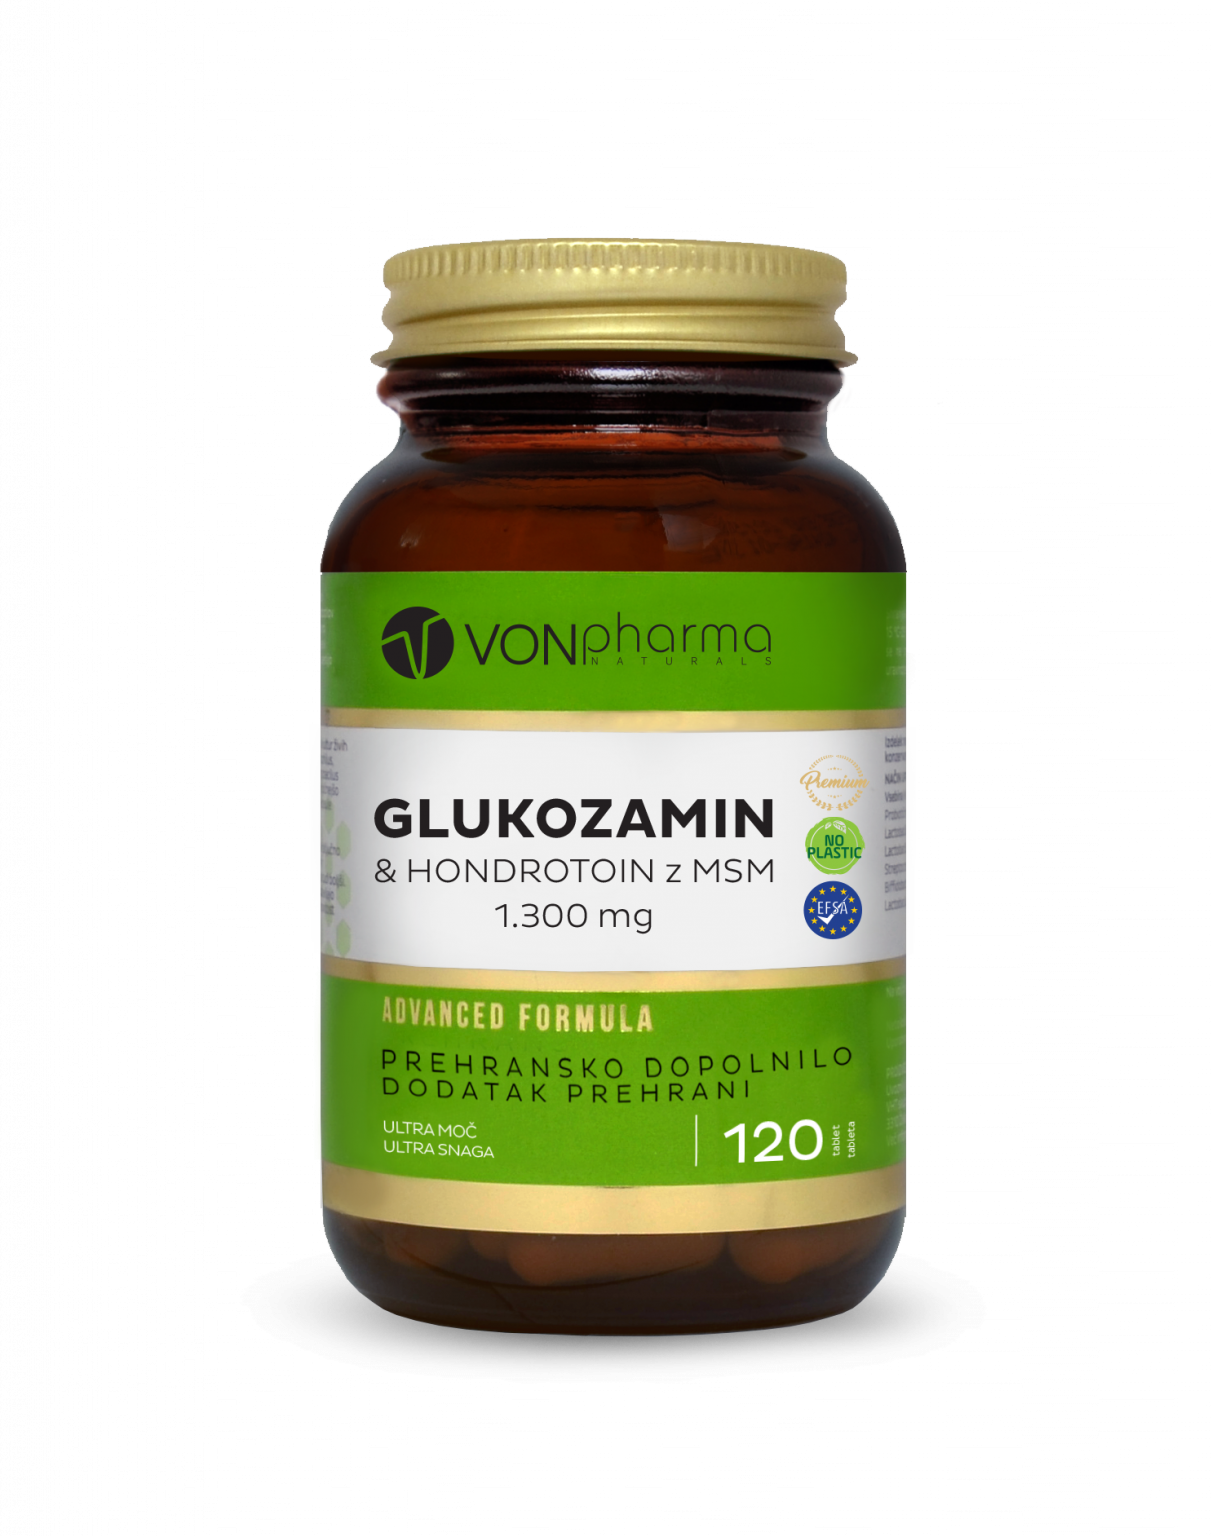 VonPharma Glukozamin in hondroitin z MSM 1300 mg, 120 tablet